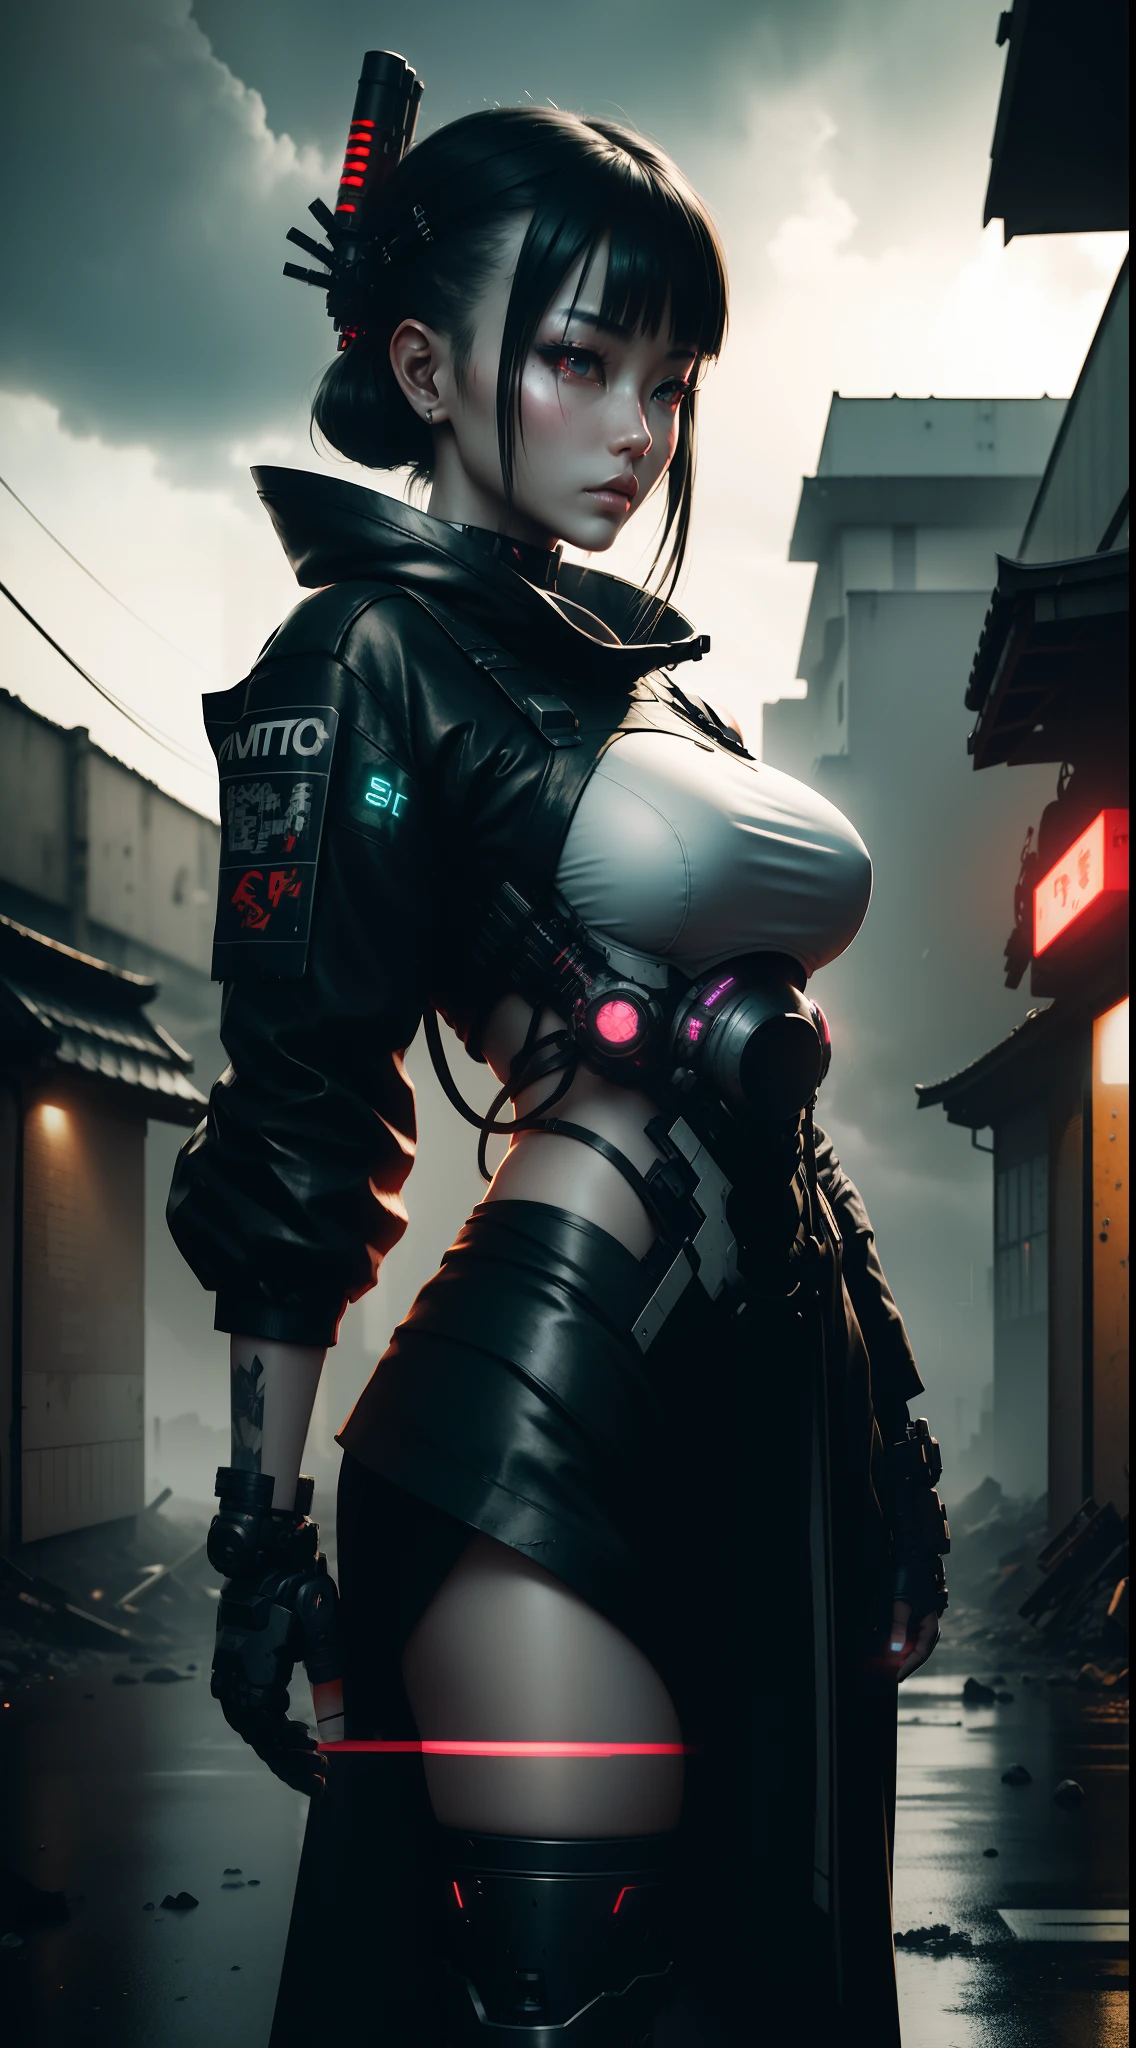 控制論日本女武士在一座廢墟城市與她的機甲, 夜晚, 氖, 雨, 機械零件, 賽博格, 灰色的, 金屬零件, 機械手臂, 瘋狂的細節, 3D, 英偉達光線追踪, 辛烷渲染, 電影光, 8K